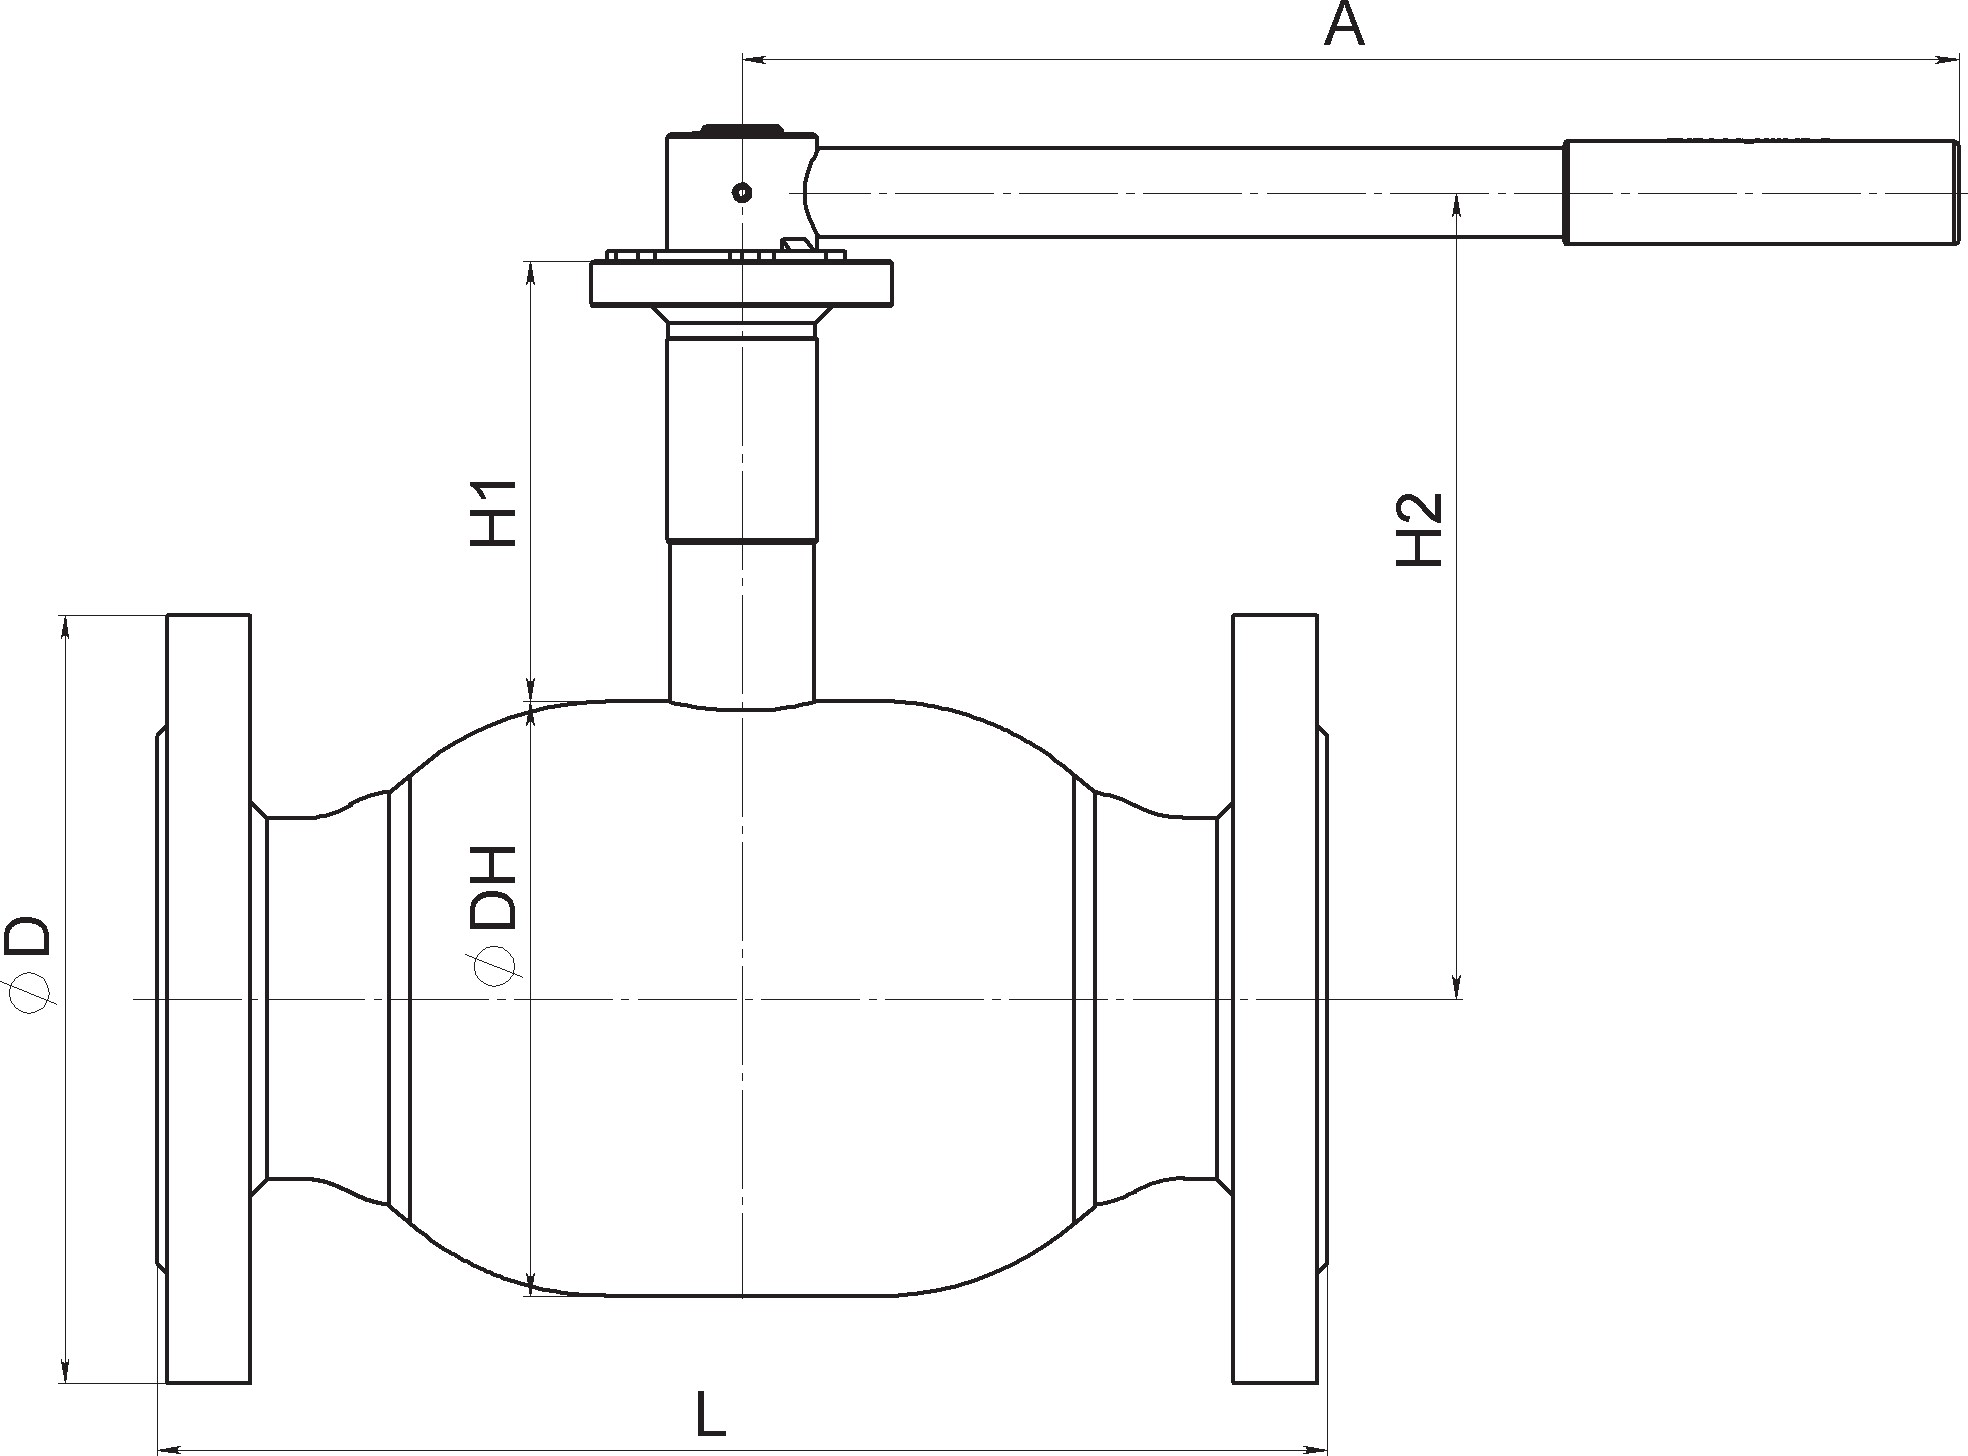 Кран шаровый Broen Ballomax-КШТ61.113А.16-25 Ду150 Ру16 полнопроходный с плавающим шаром, с ISO фланцем, корпус - сталь, уплотнение - EPDM, фланцевый, ручка-рычаг